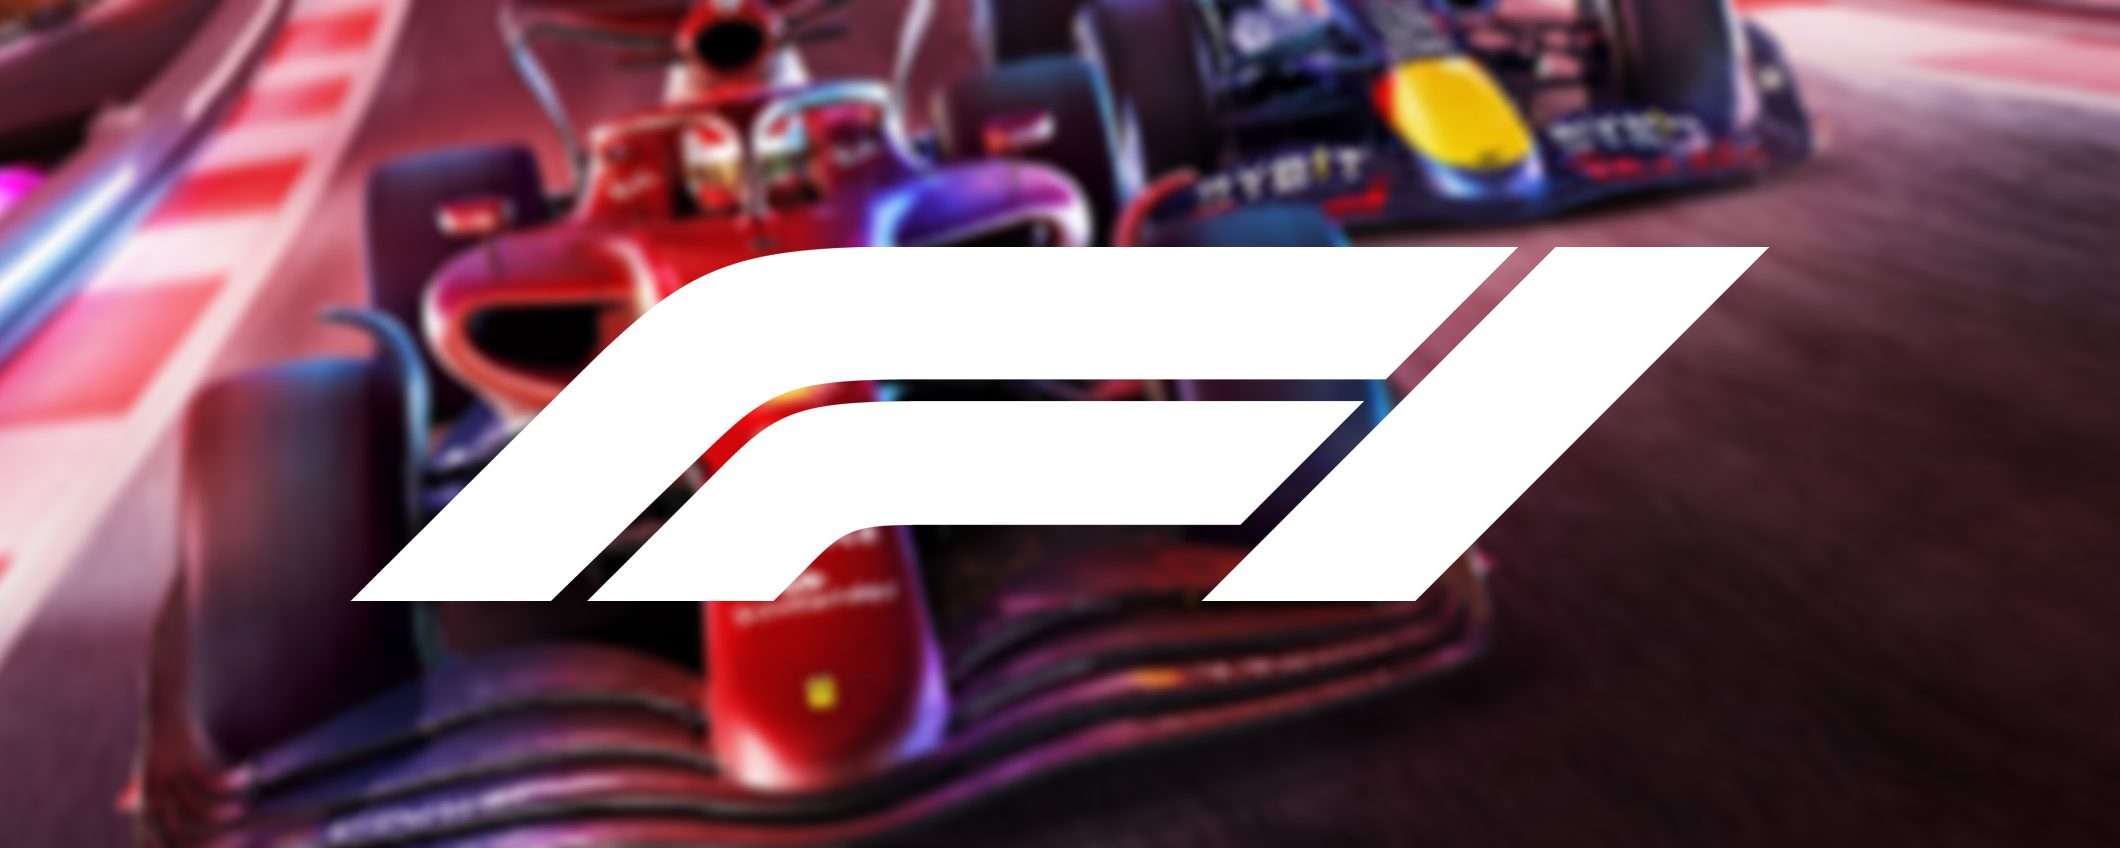 Formula 1: come vedere tutte le gare in diretta